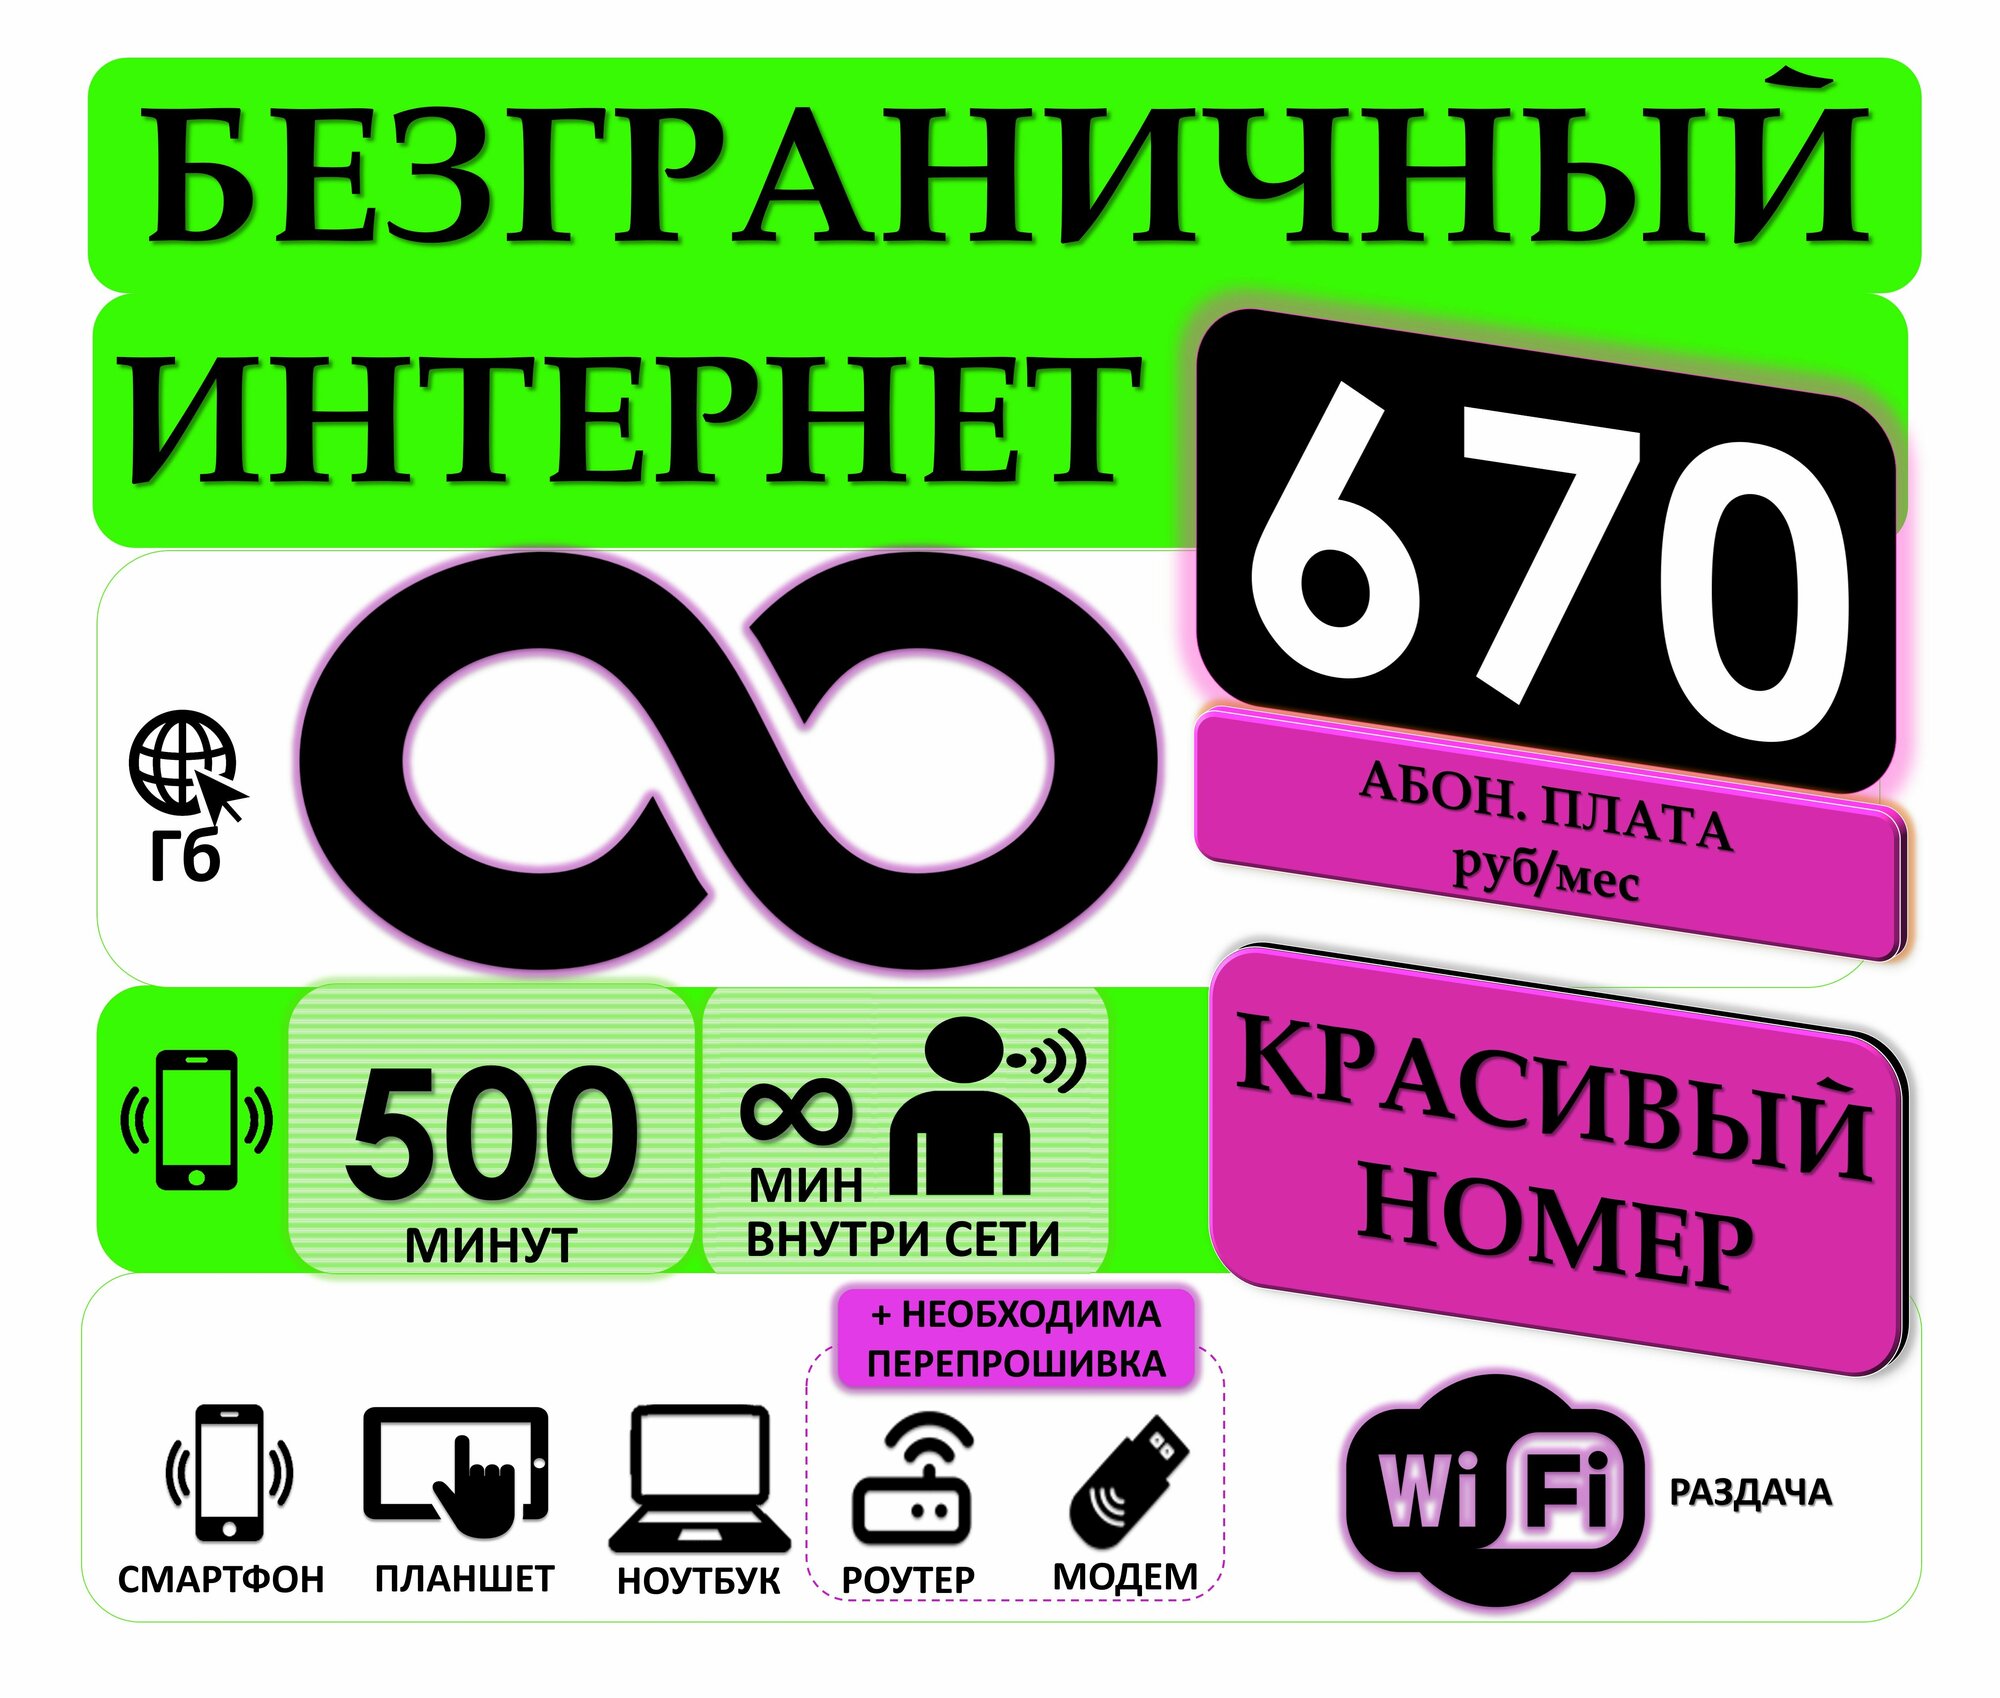 Сим-карта с Раздачей Безлимитного интернета и Красивым номером за 670 рублей в месяц, списывается посуточно.